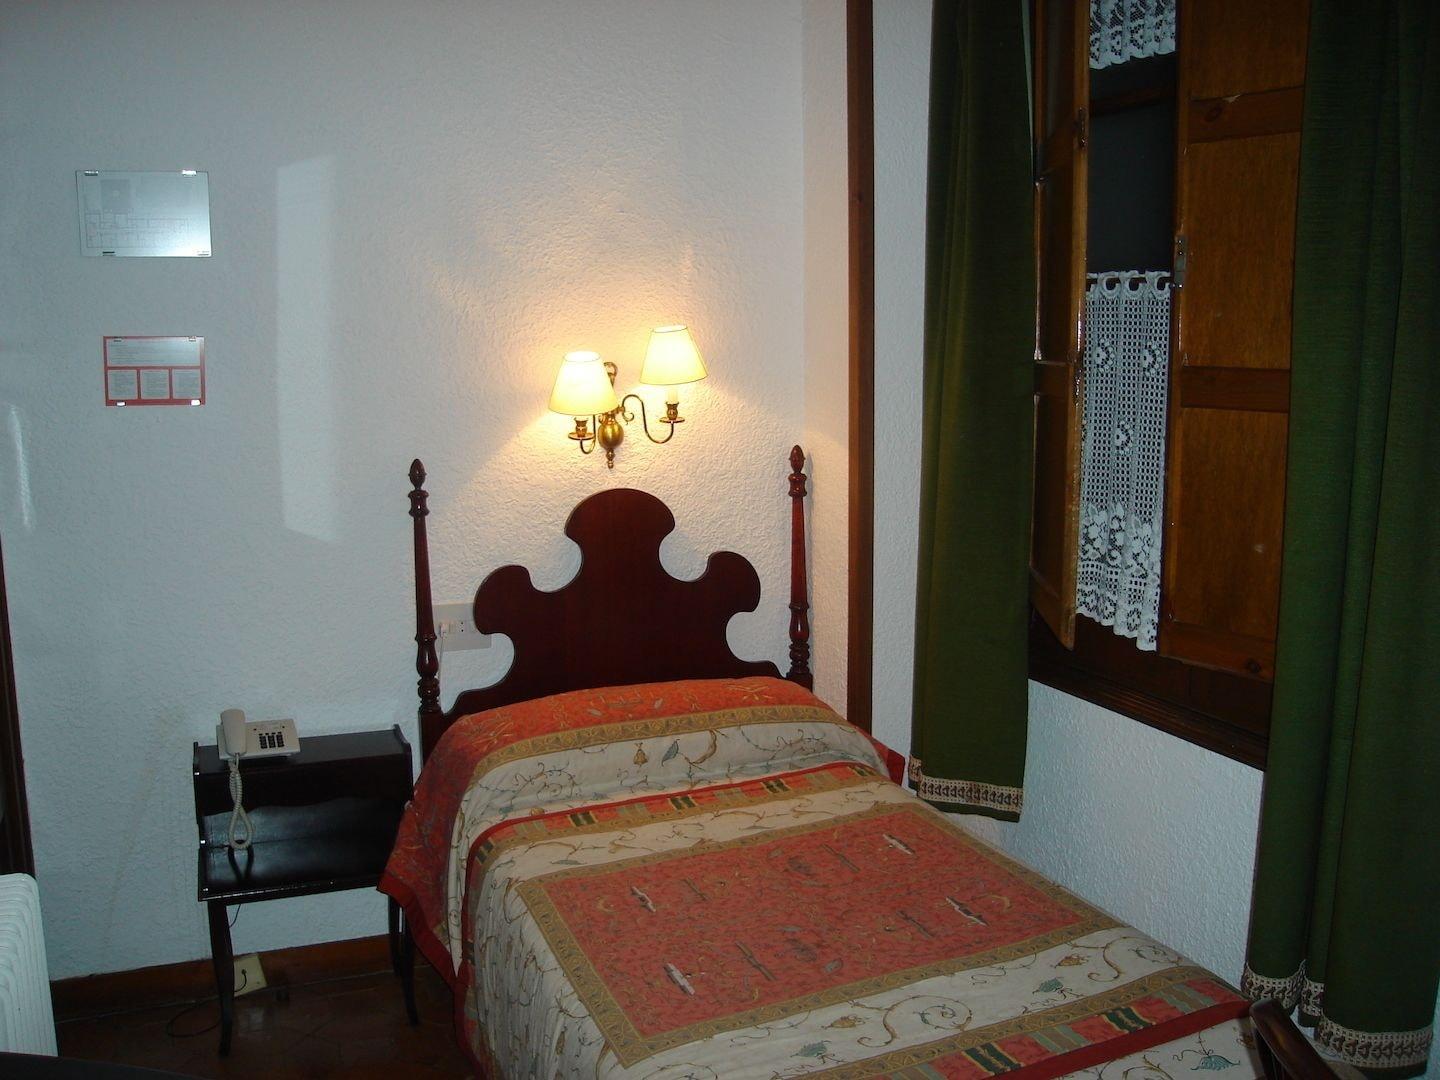 Hotel Conde Aznar Jaca Zewnętrze zdjęcie